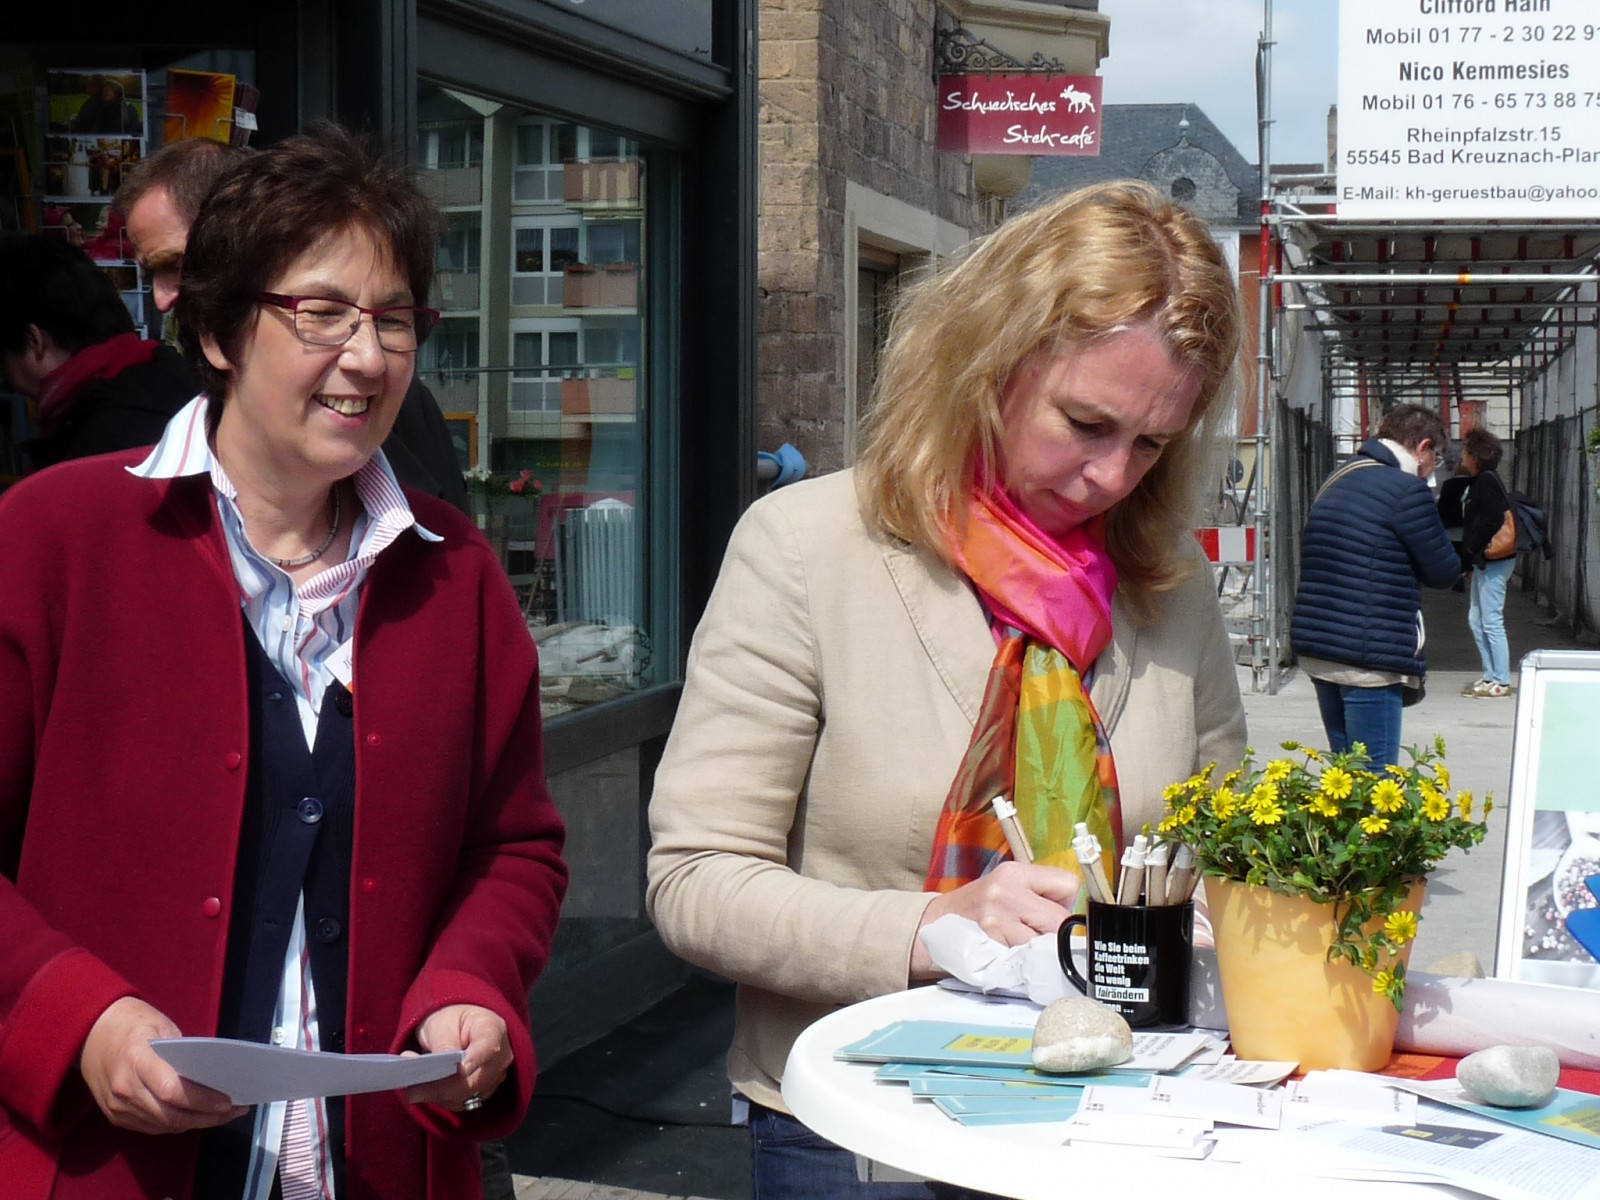 Auch die Oberbürgermeisterin von Bad Kreuznach, Dr. Heike Kaster-Meurer, unterstützte unsere Forderungen mit einer Unterschrift!